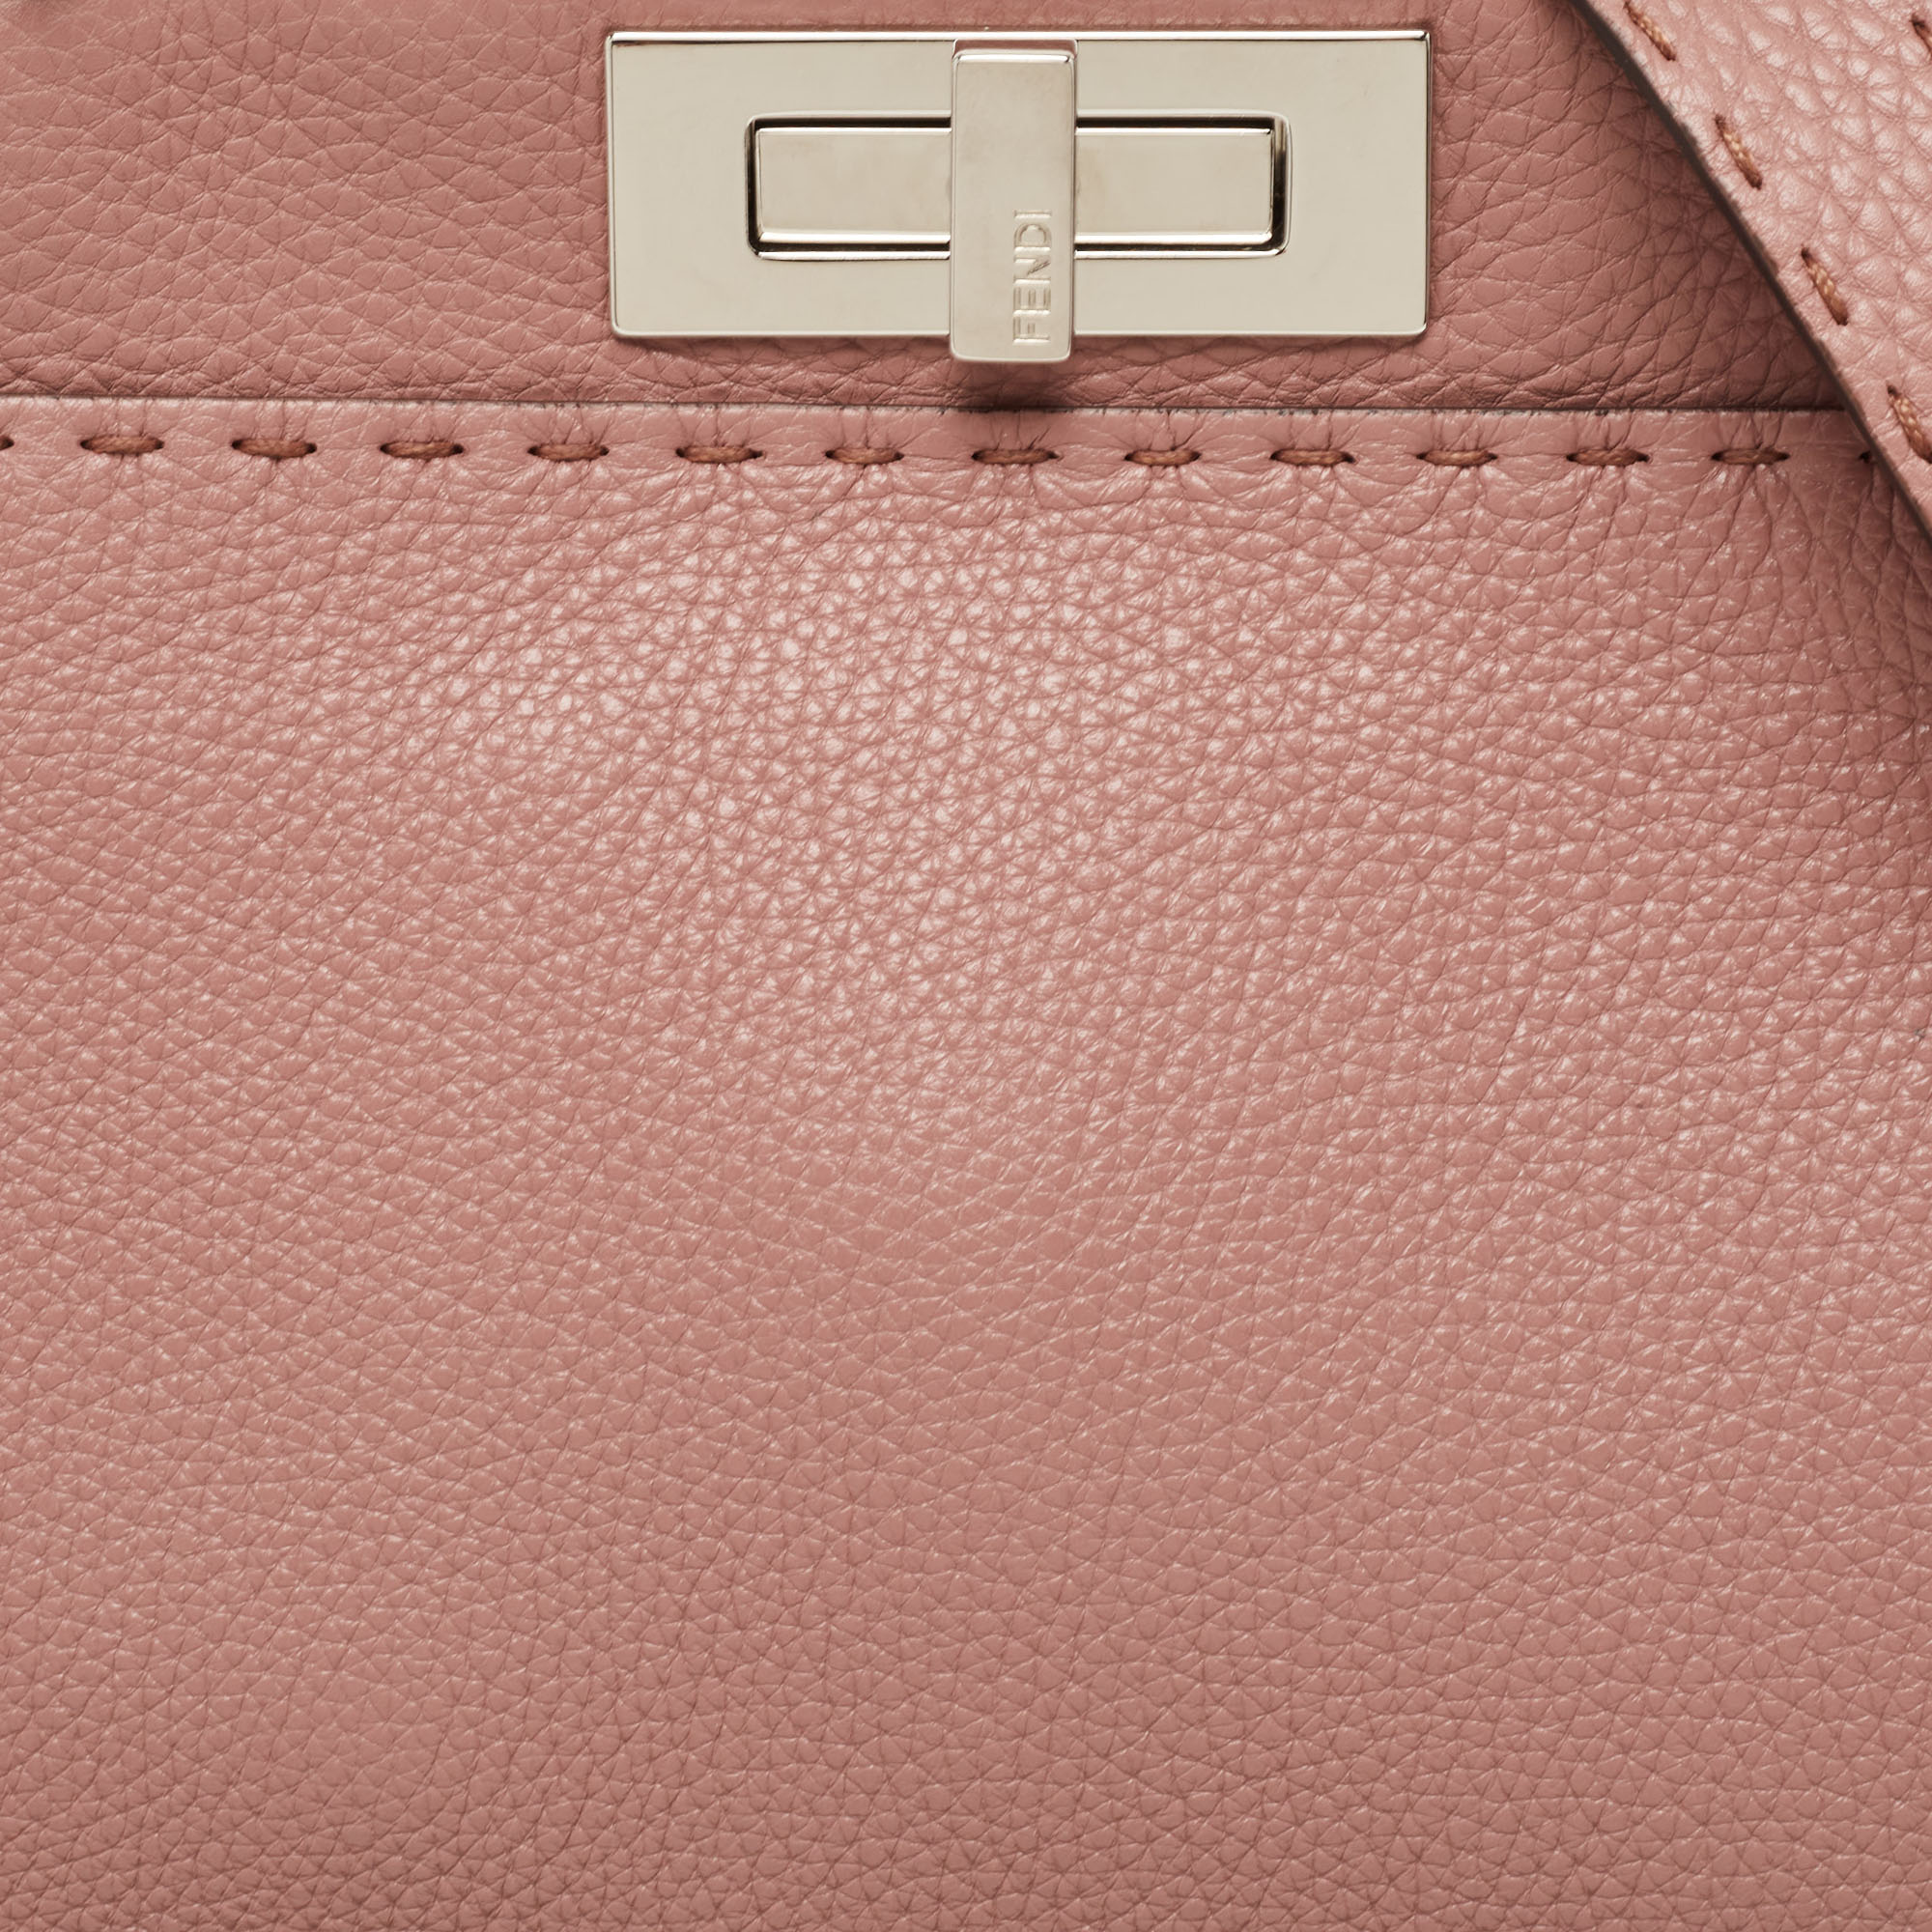 Fendi Old Rose Leather Medium Peekaboo Top Handle Bag